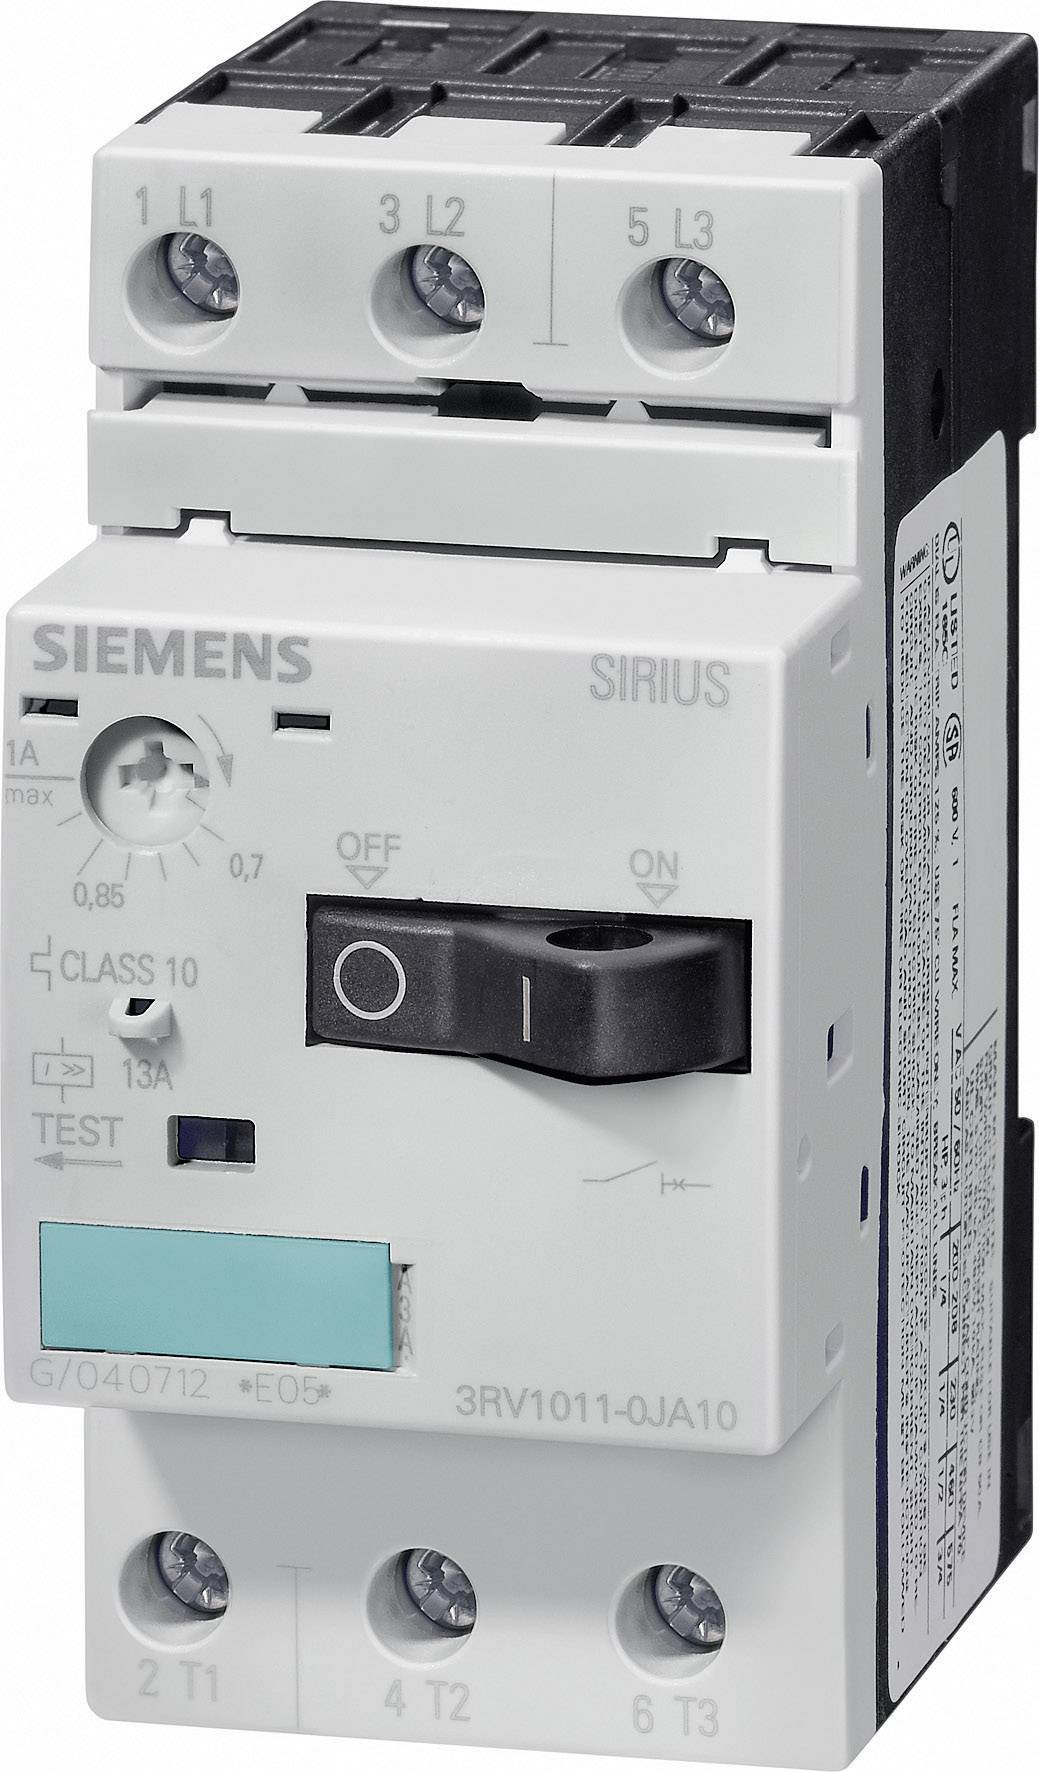 SIEMENS FURNAS ELECTRIC CO 3RV1011-1JA10 CIRCUIT BREAKER 